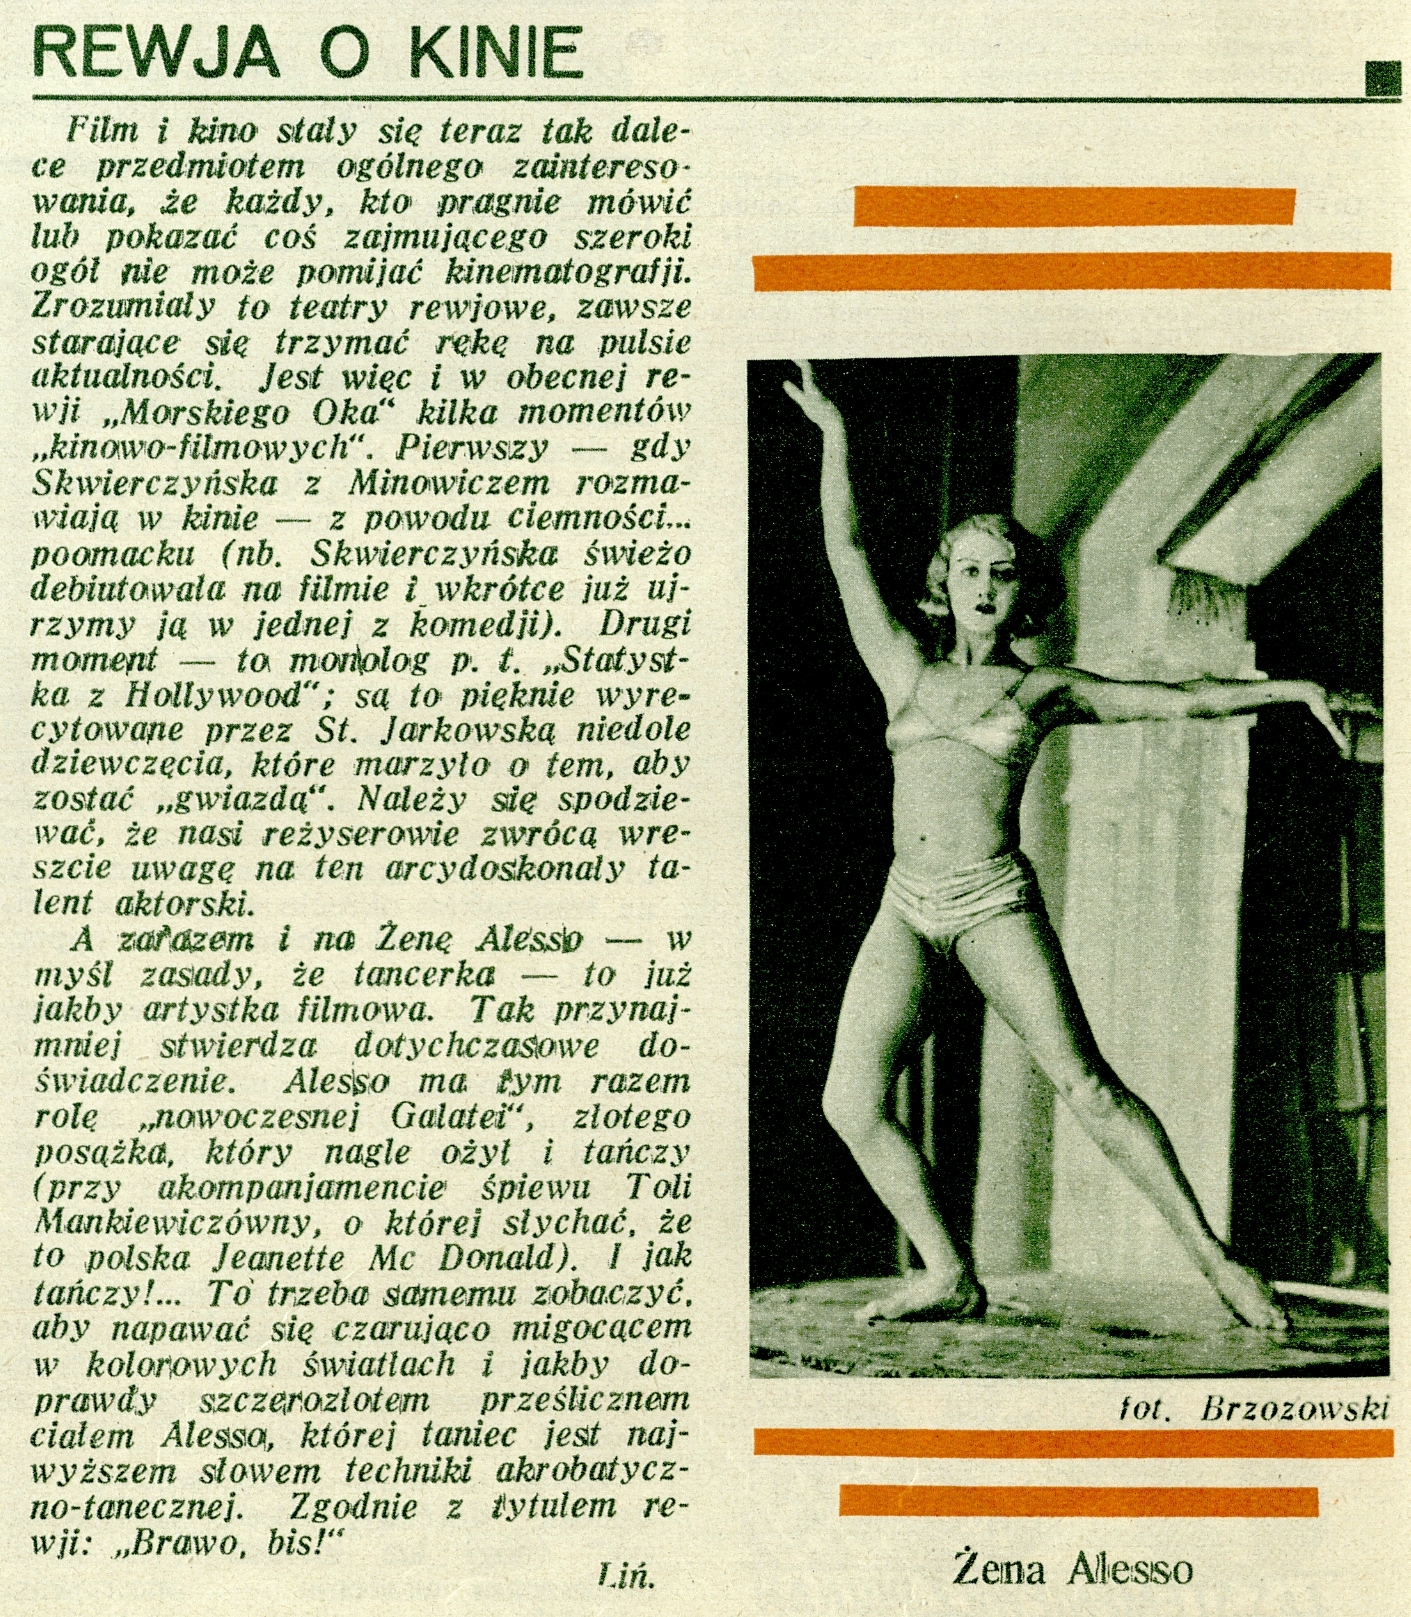 Bożena (Żena) Alesso, fot. Stanisław Brzozowski. Obok recenzja autorstwa Henryka Lińskiego, „Kino” 1932, nr 3